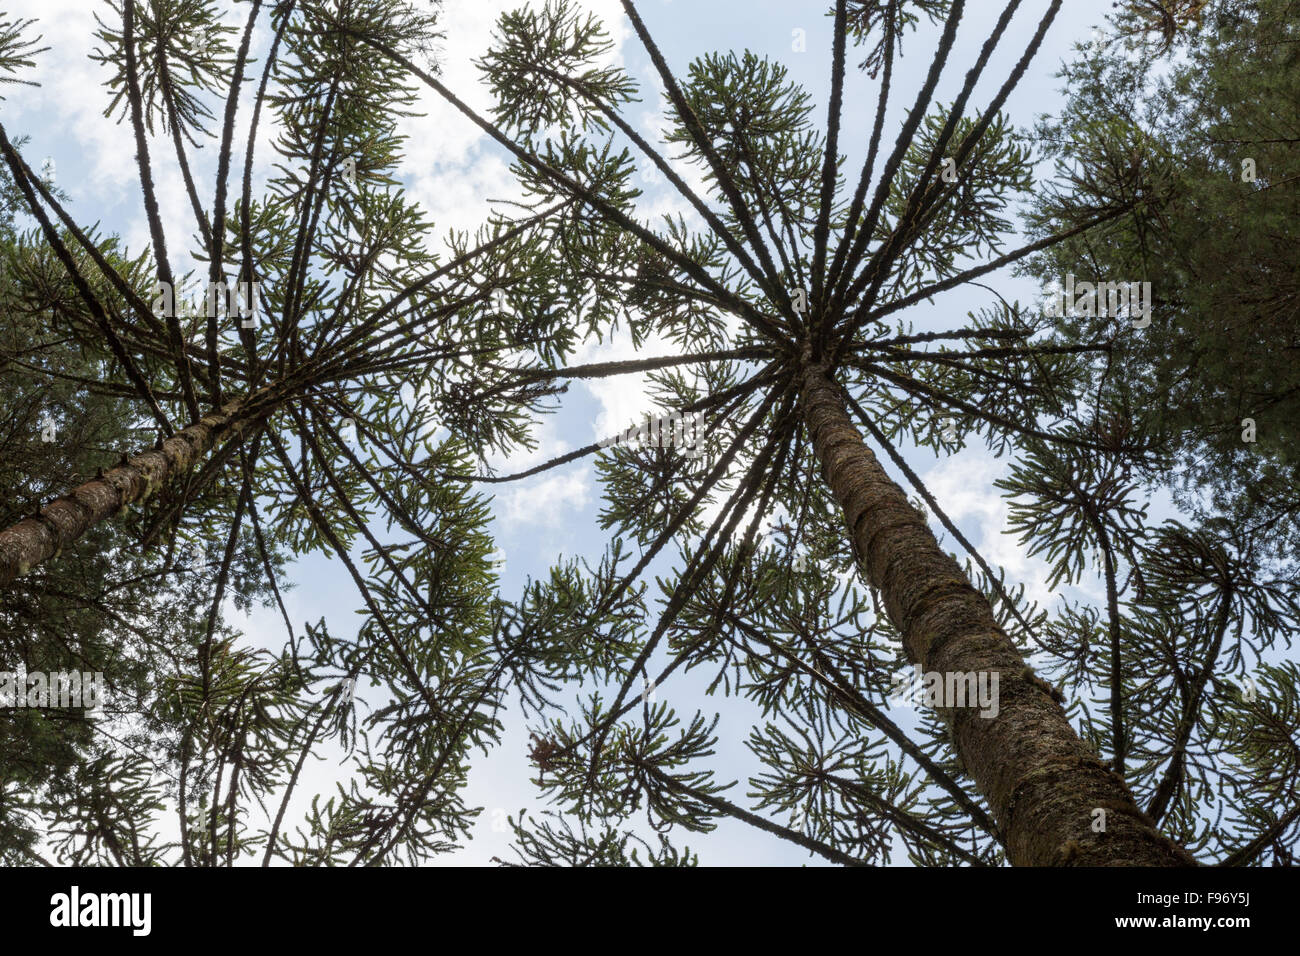 Brazilian pine (Araucaria angustifolia), a.k.a. parana pine, candelabra tree (pinheiro brasileiro, parana), treetop, Campos do Jordao, SP, Brazil Stock Photo